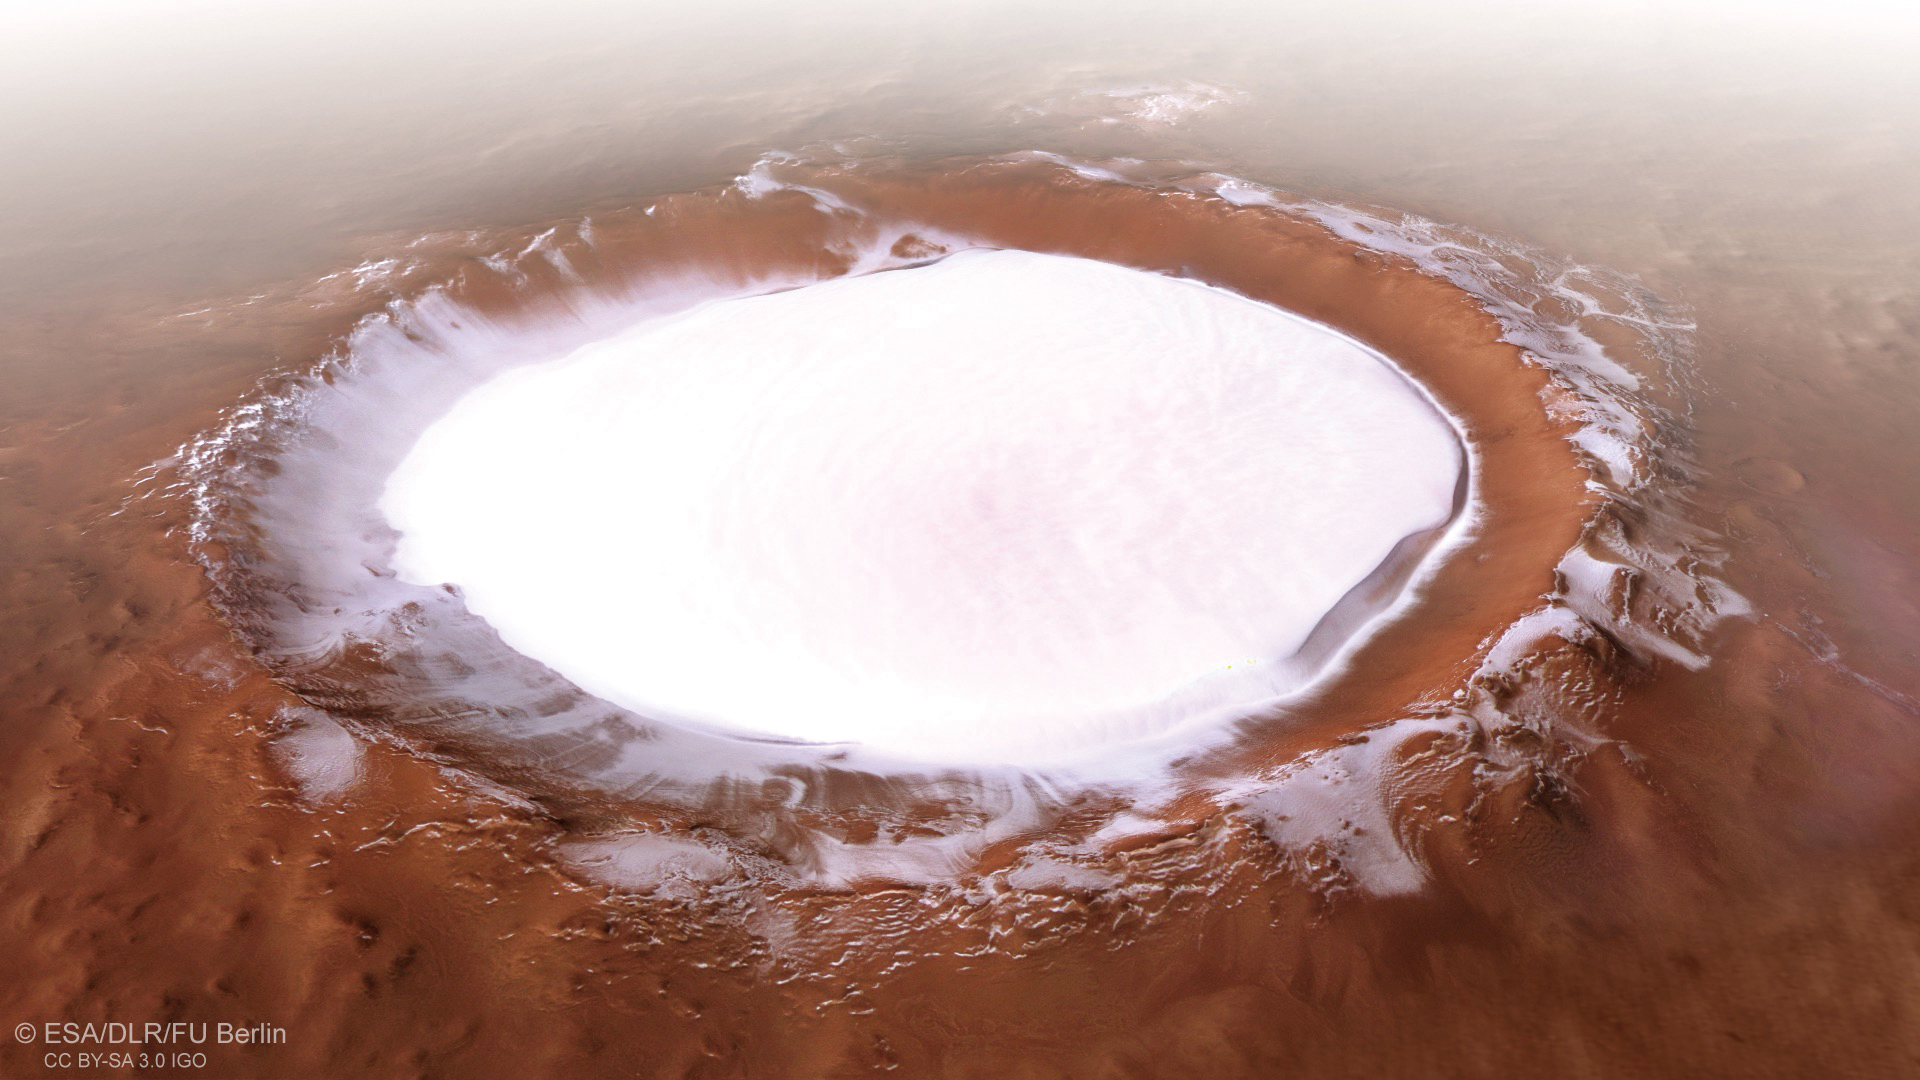 火星快車傳回的隕石坑照片，其中鋪著未擾動過的雪。這個隕石坑叫做Korolev crater，位於火星北半球（165°E, 73°N），直徑82公里。（按，火星快車已在火星軌道上運行了15年以上）（credit: ESA / DLR / FU Berlin, CC BY-SA 3.0 IGO）